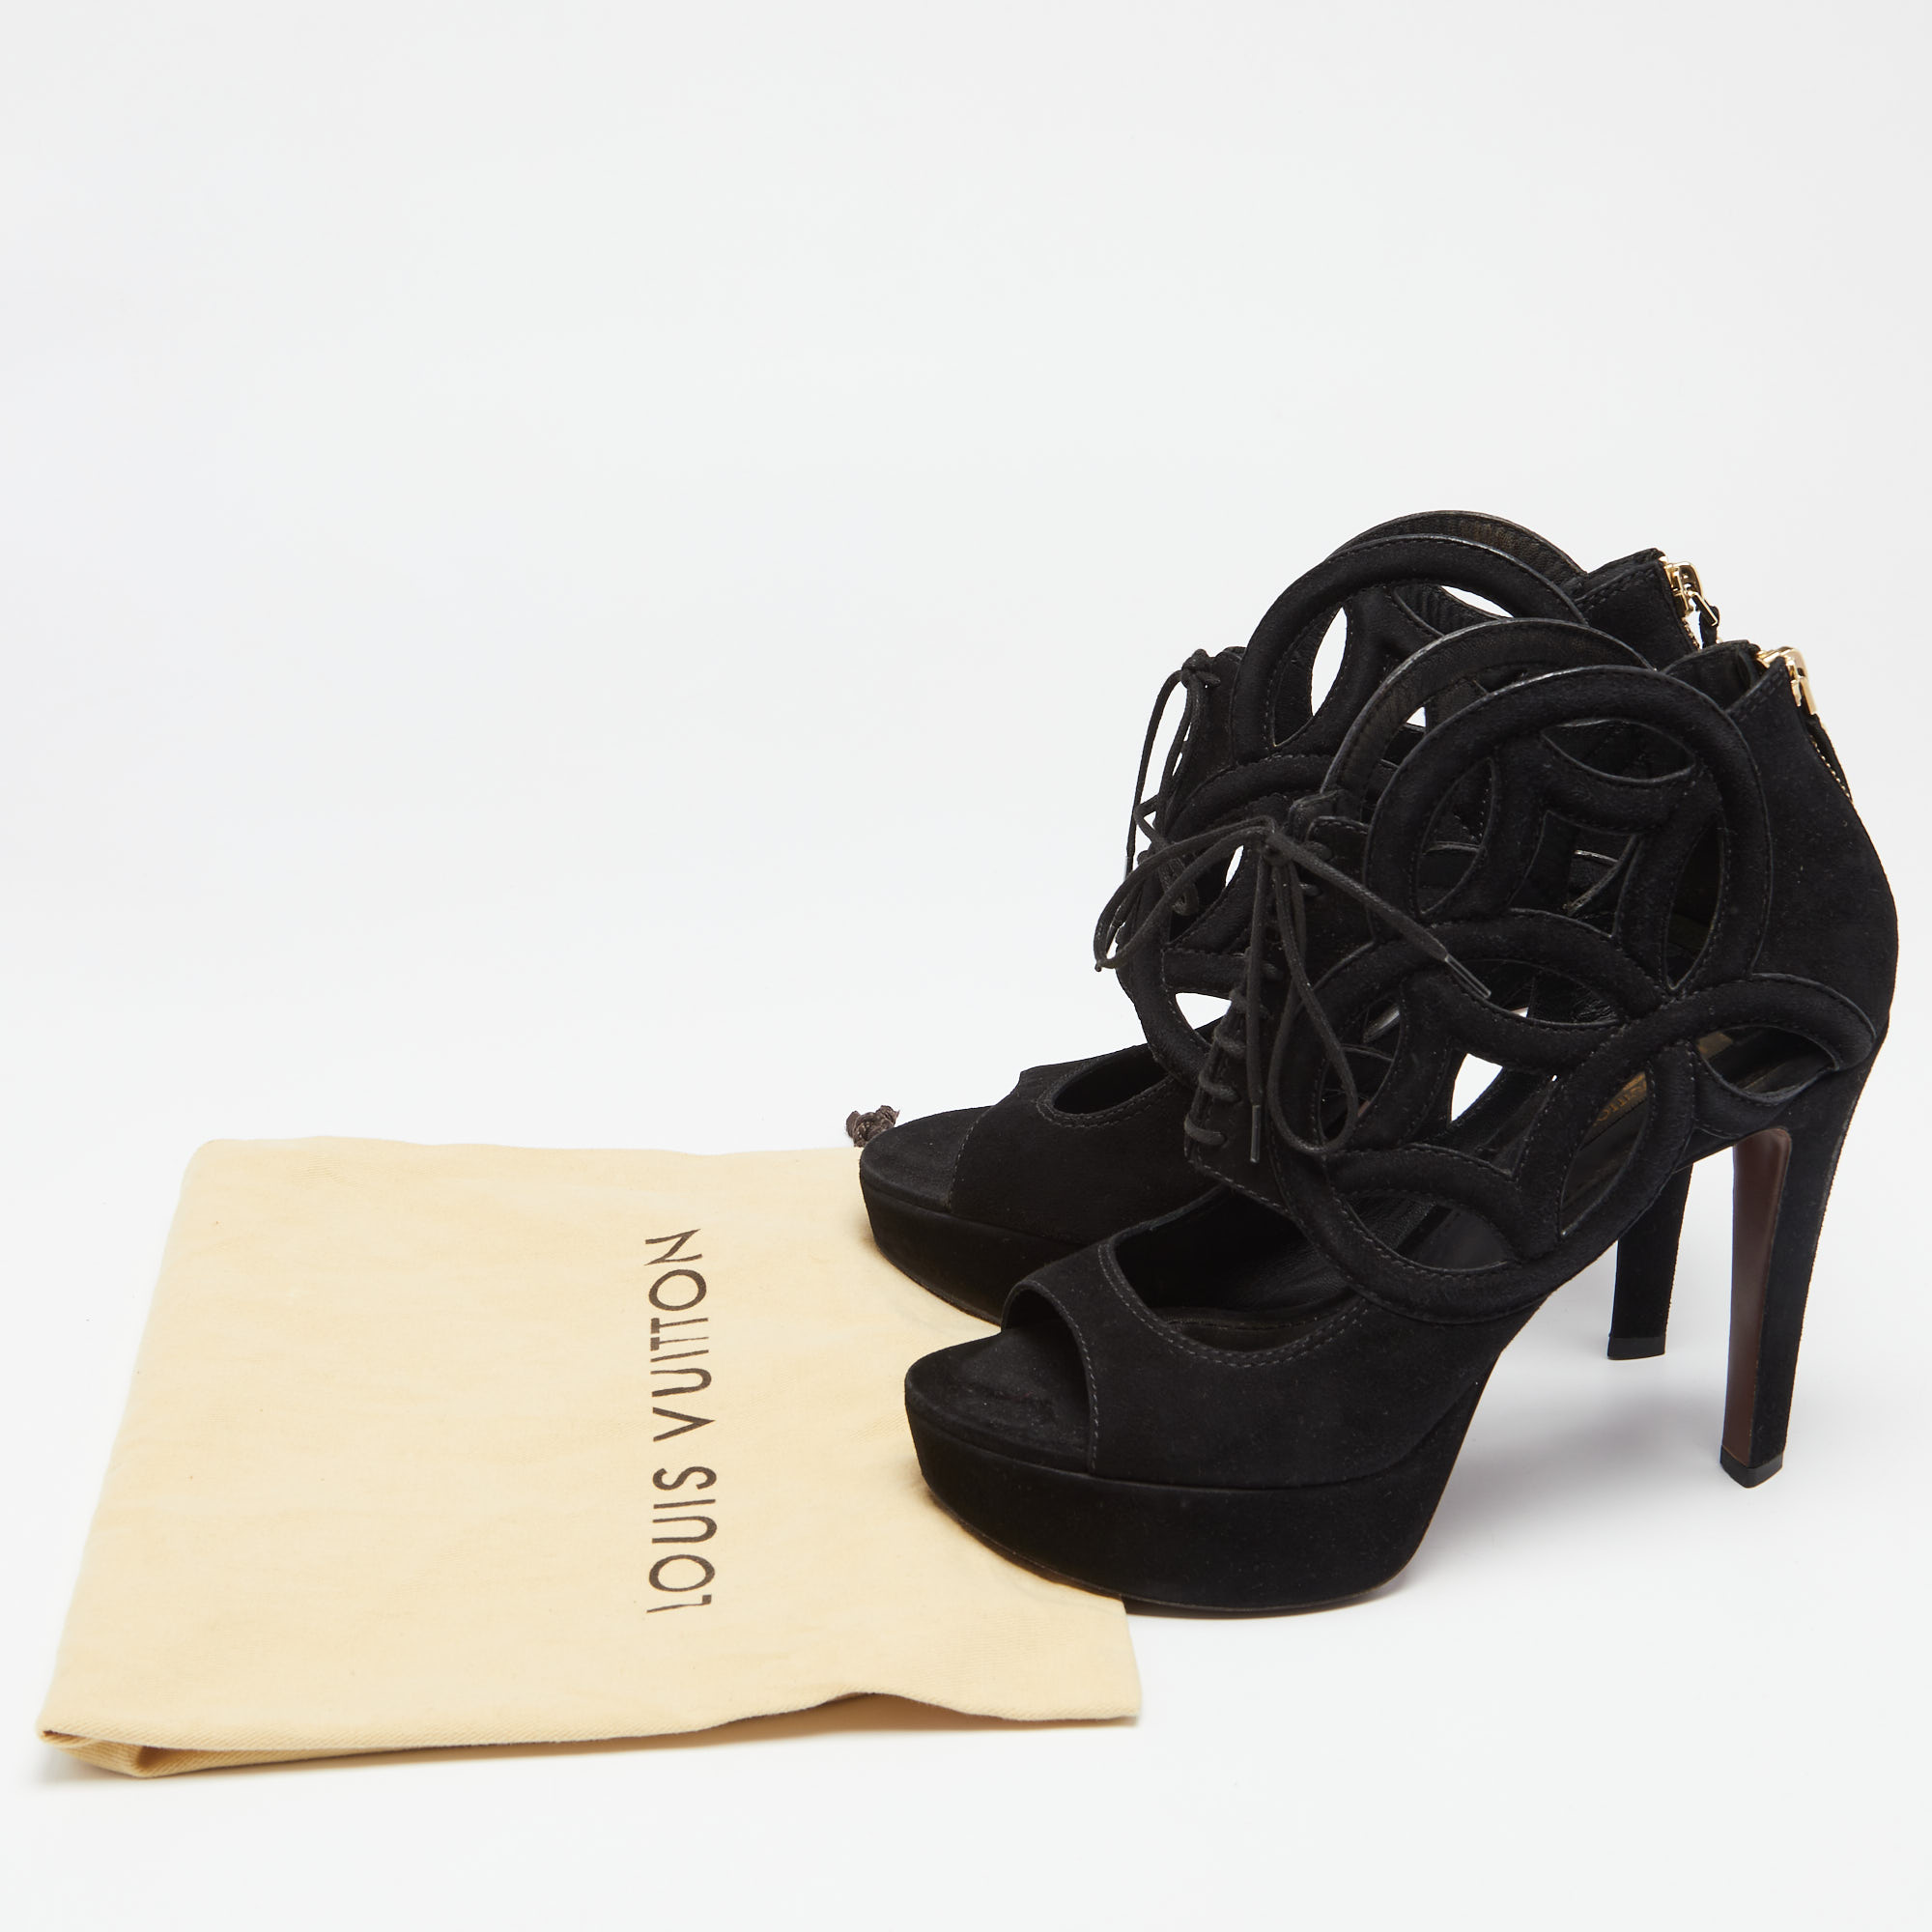 Louis Vuitton Black Suede Cutout Monogram Lace Up Platform Sandals Size 37.5